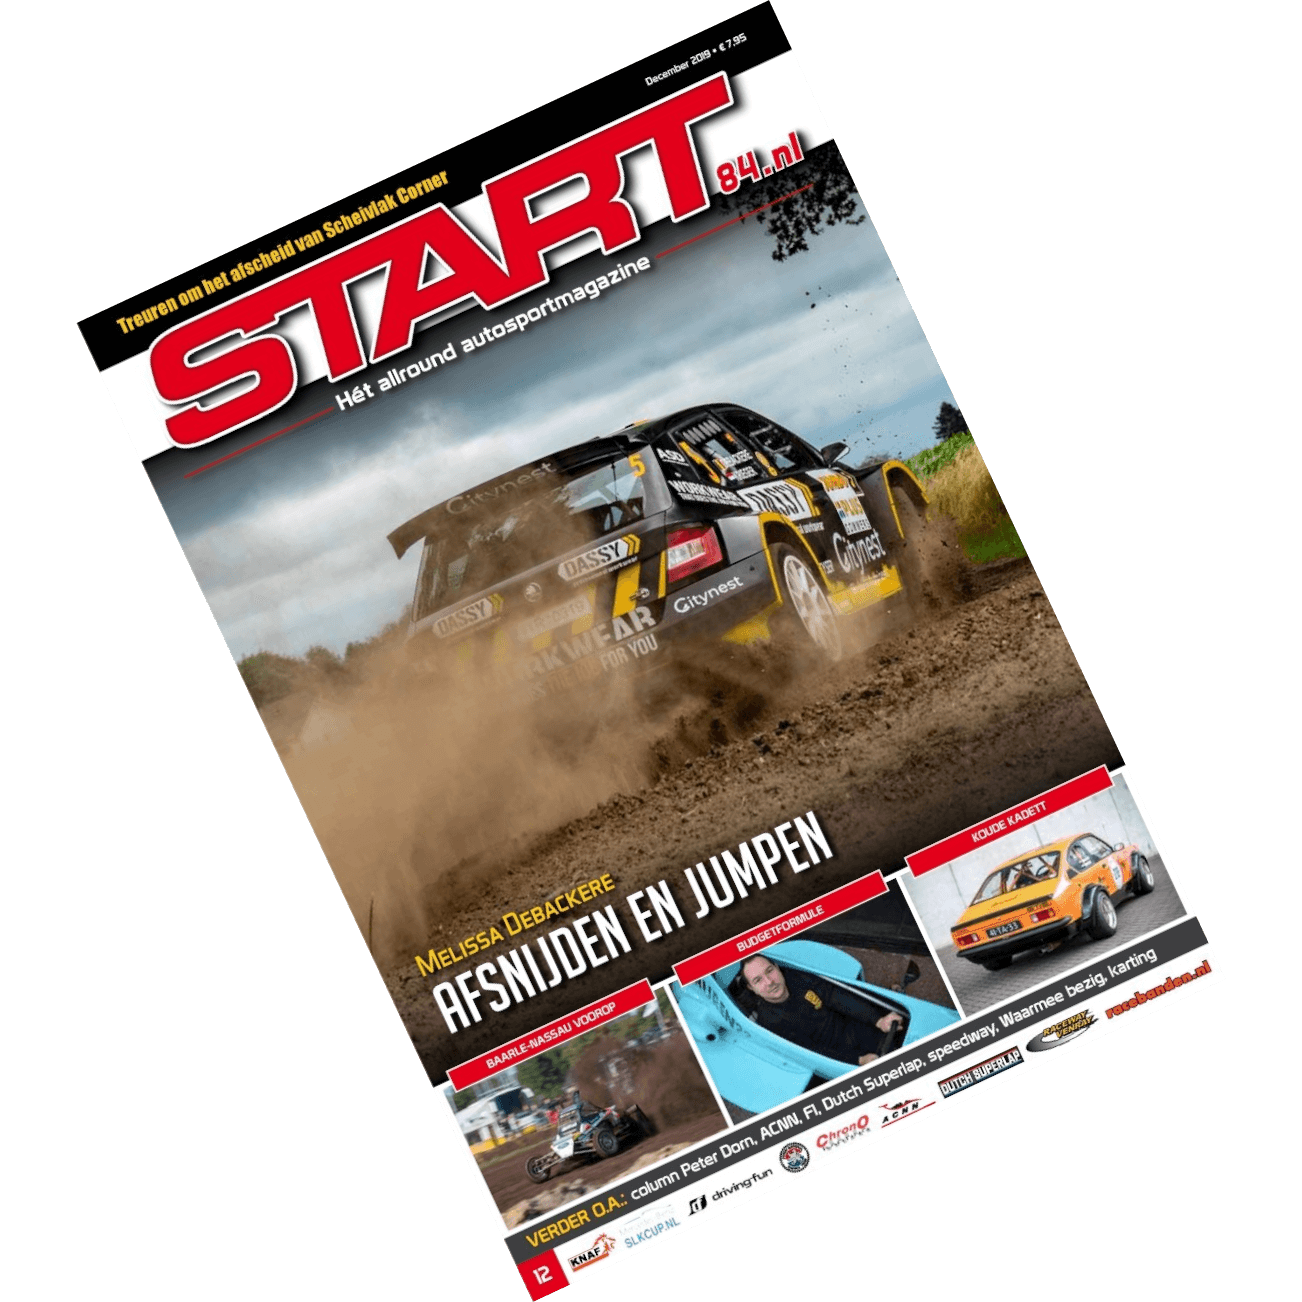 Cover van START '84 autosportmagazine van december 2019 als voorbeeld bij jaaroverzicht